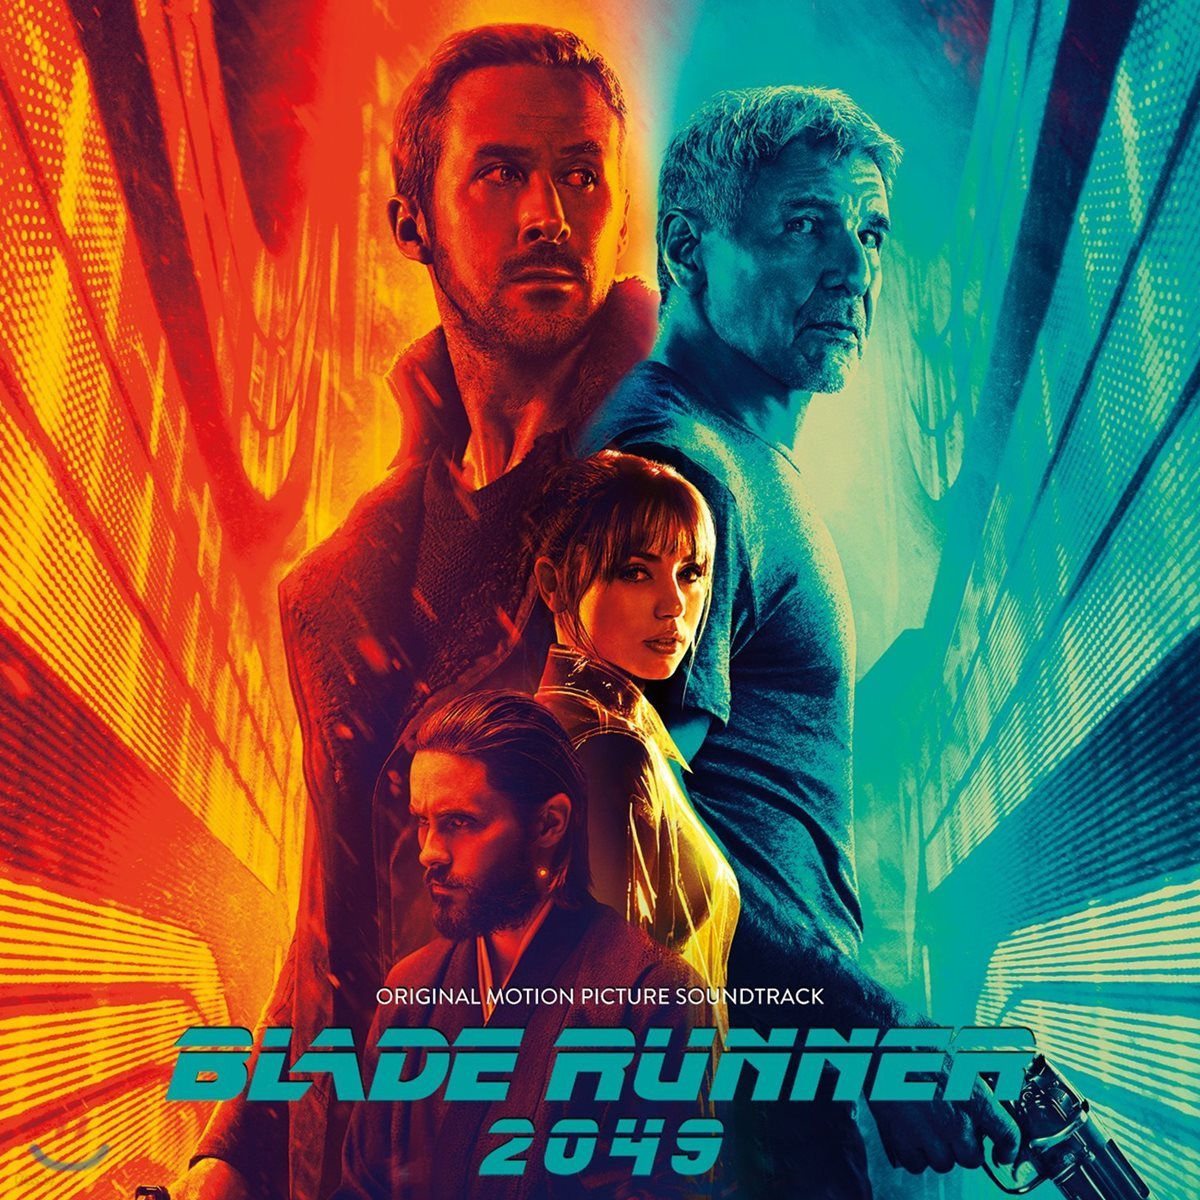 블레이드 러너 2049 영화음악 (Blade Runner 2049 OST by Hans Zimmer & Benjamin Wallfisch)